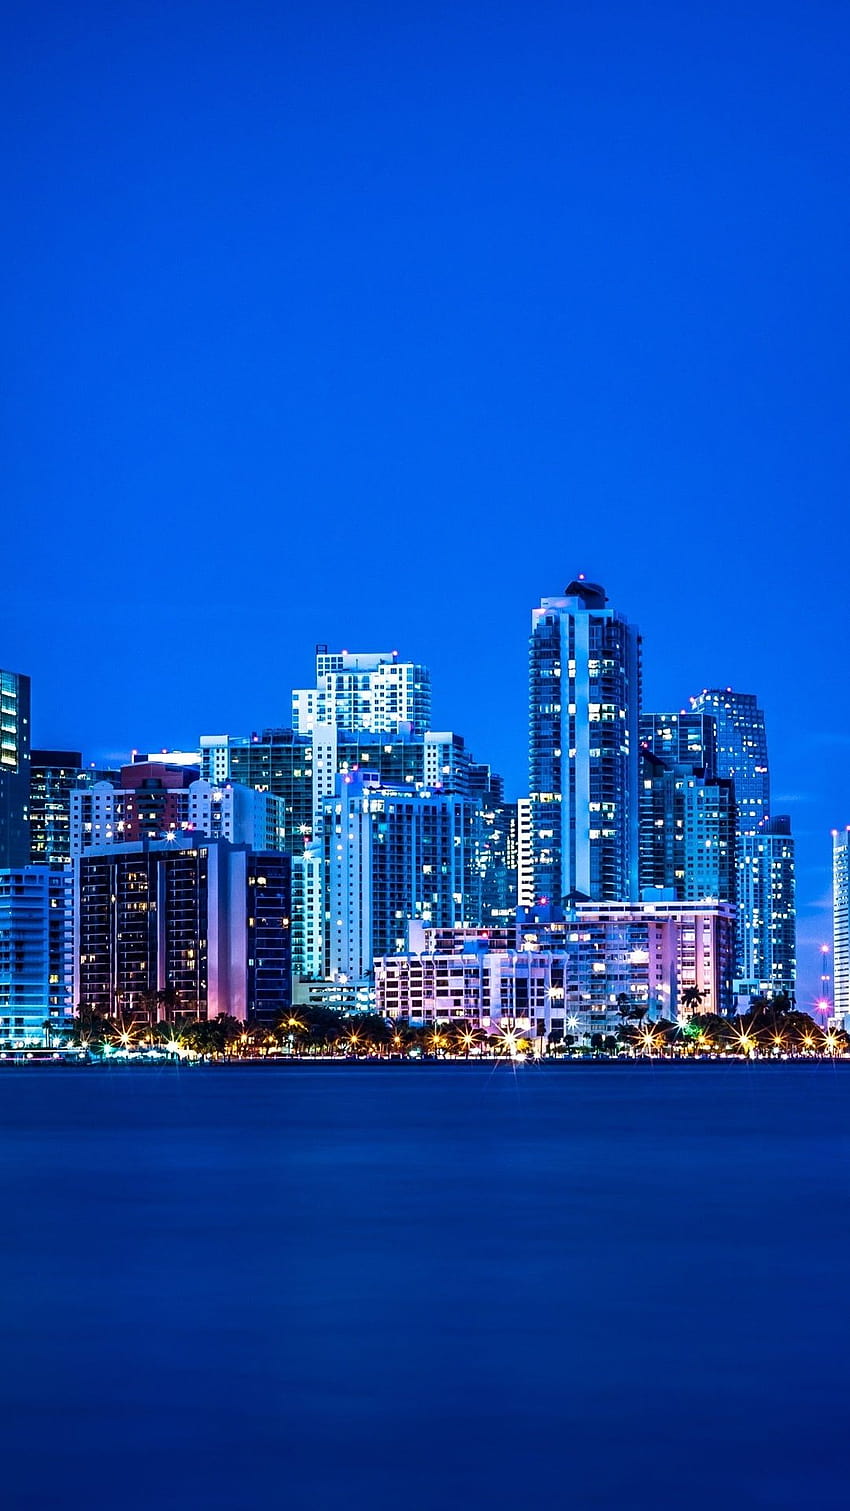 Miami đêm là một trong những khung cảnh đẹp nhất của nước Mỹ. Với tòa nhà cao ốc lung linh ánh đèn và những đường phố tấp nập nhộn nhịp, ảnh Miami đêm chắc chắn sẽ khiến bạn muốn tìm hiểu thêm về thành phố này.